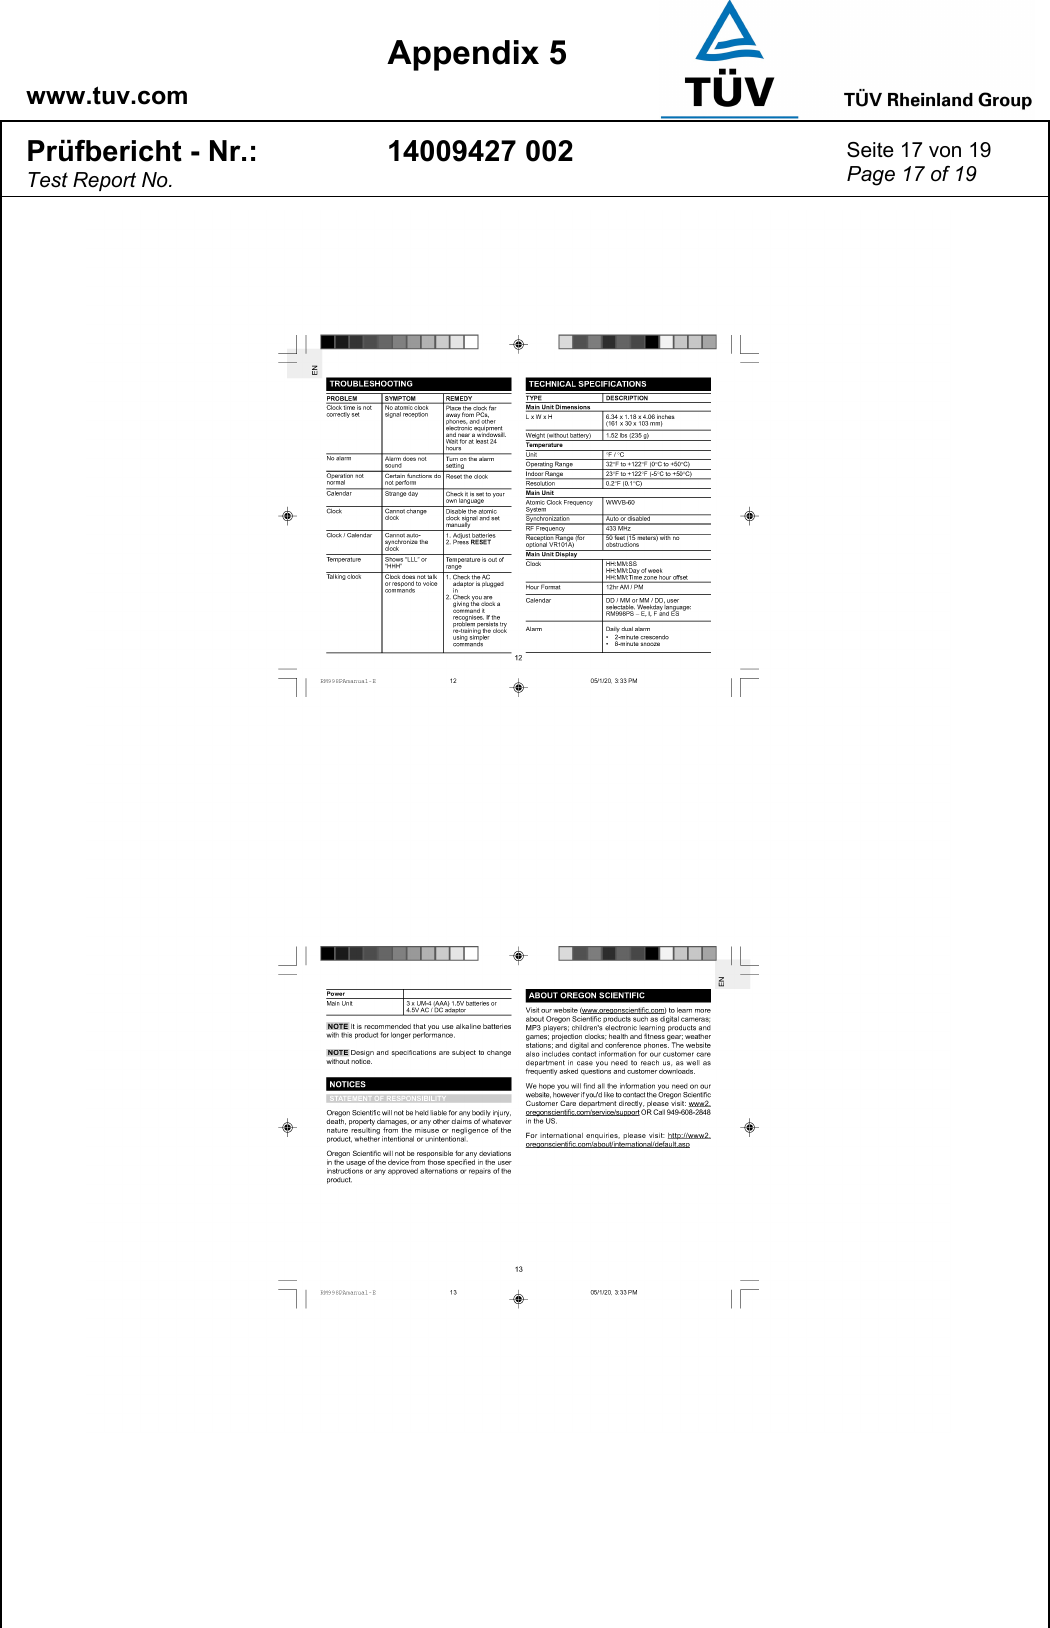    www.tuv.com  Appendix 5 Prüfbericht - Nr.: Test Report No. 14009427 002  Seite 17 von 19 Page 17 of 19   